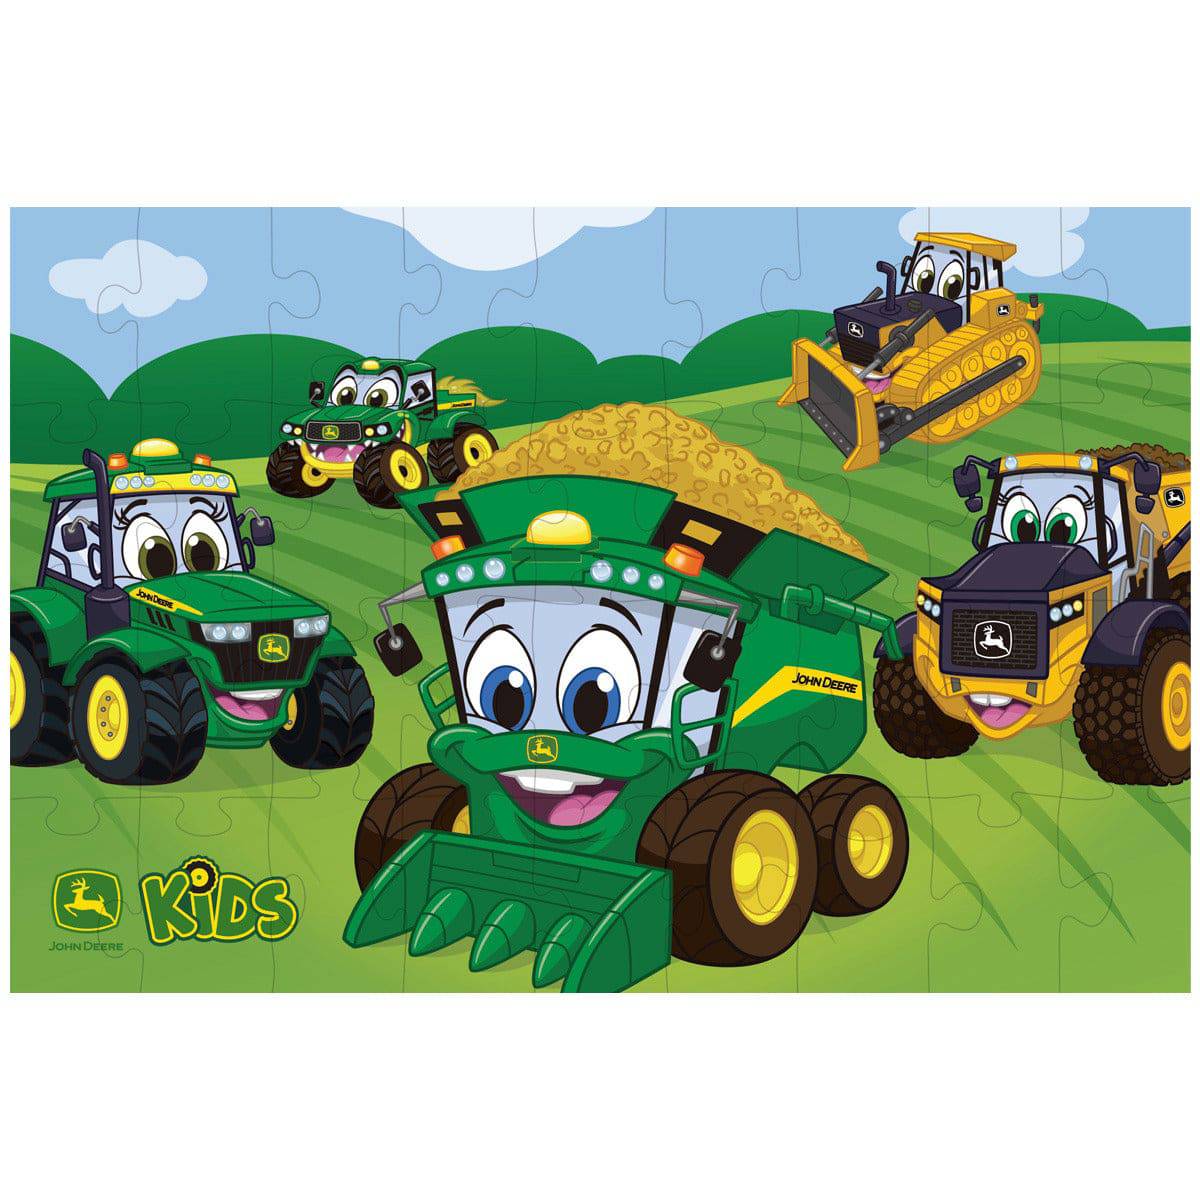 john deere tractors cartoon